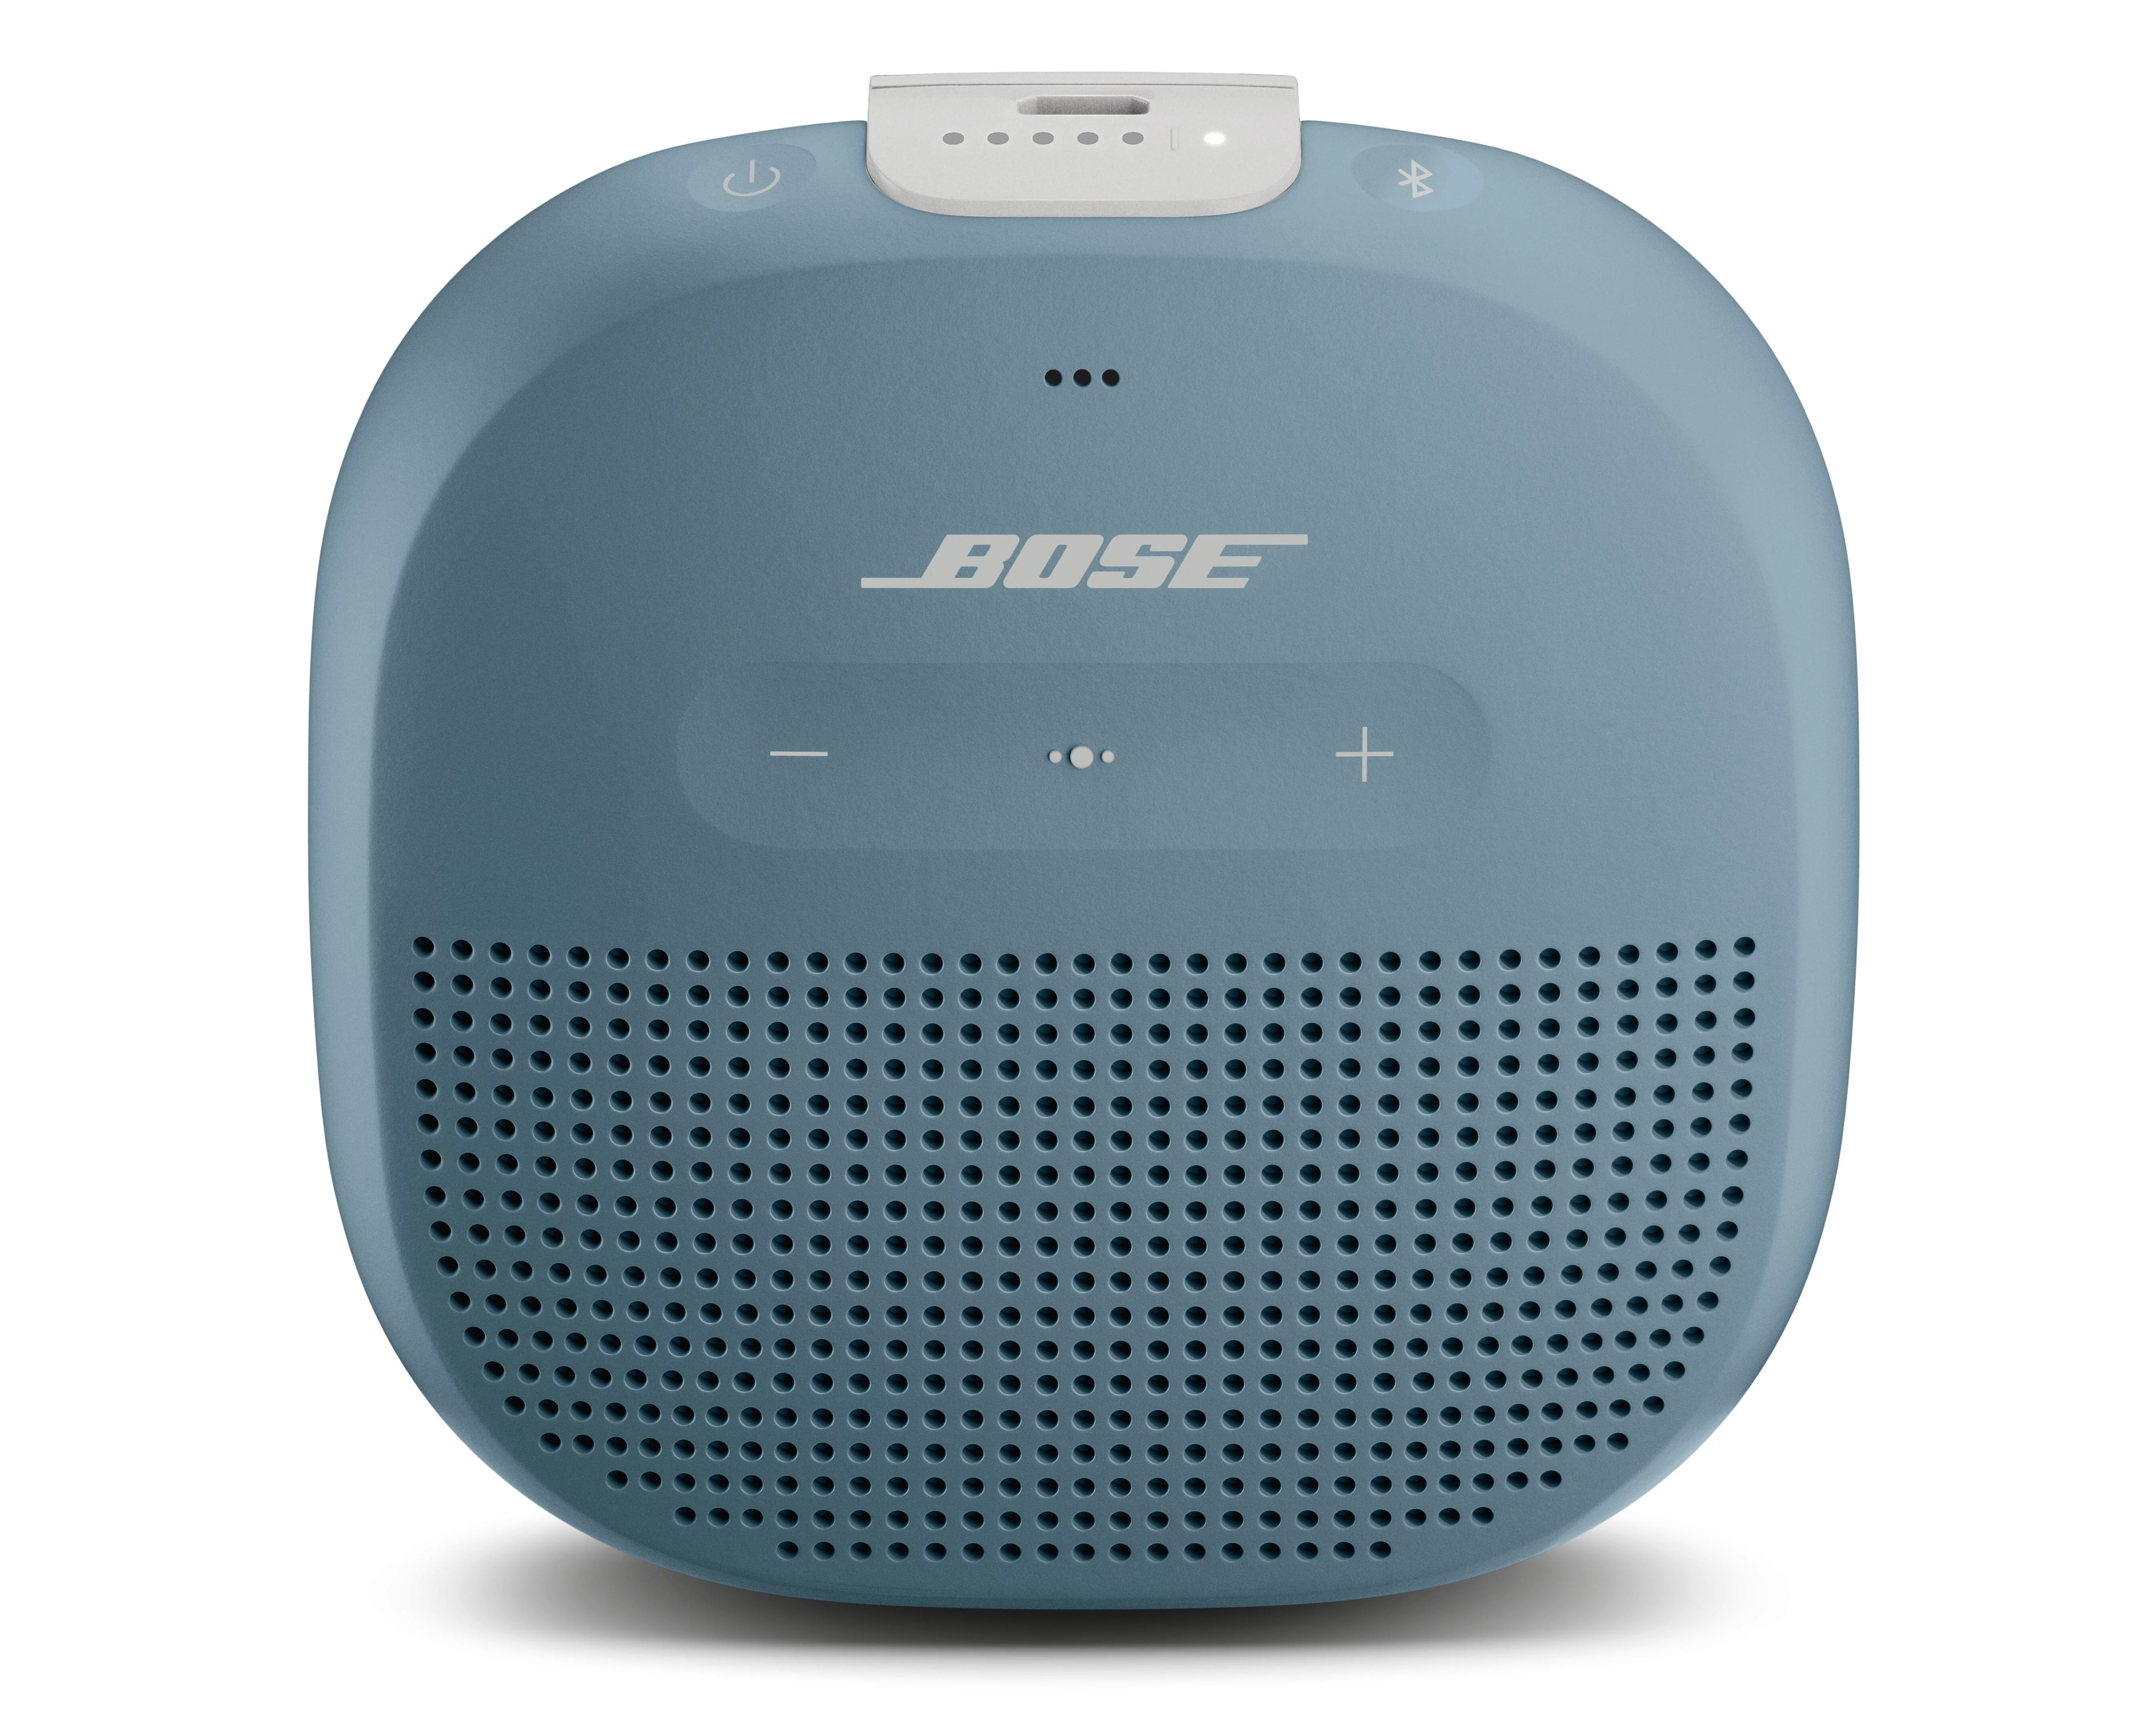 Bose SoundLink Micro Waterproof Wireless Bluetooth Portable Speaker, Stone Blue